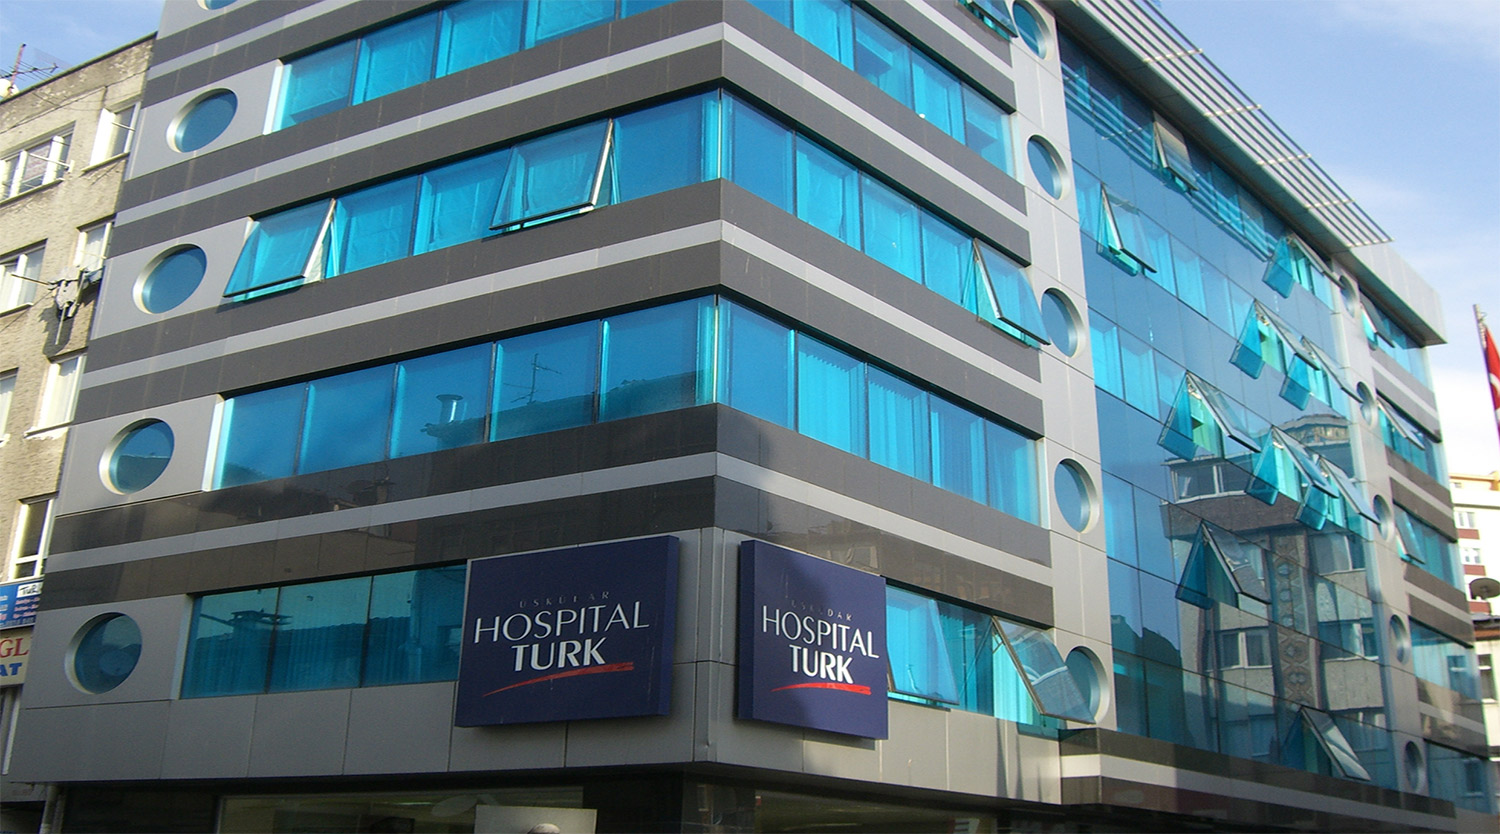 Özel Üsküdar Hospitaltürk Hastanesi Hastane | Türkiye